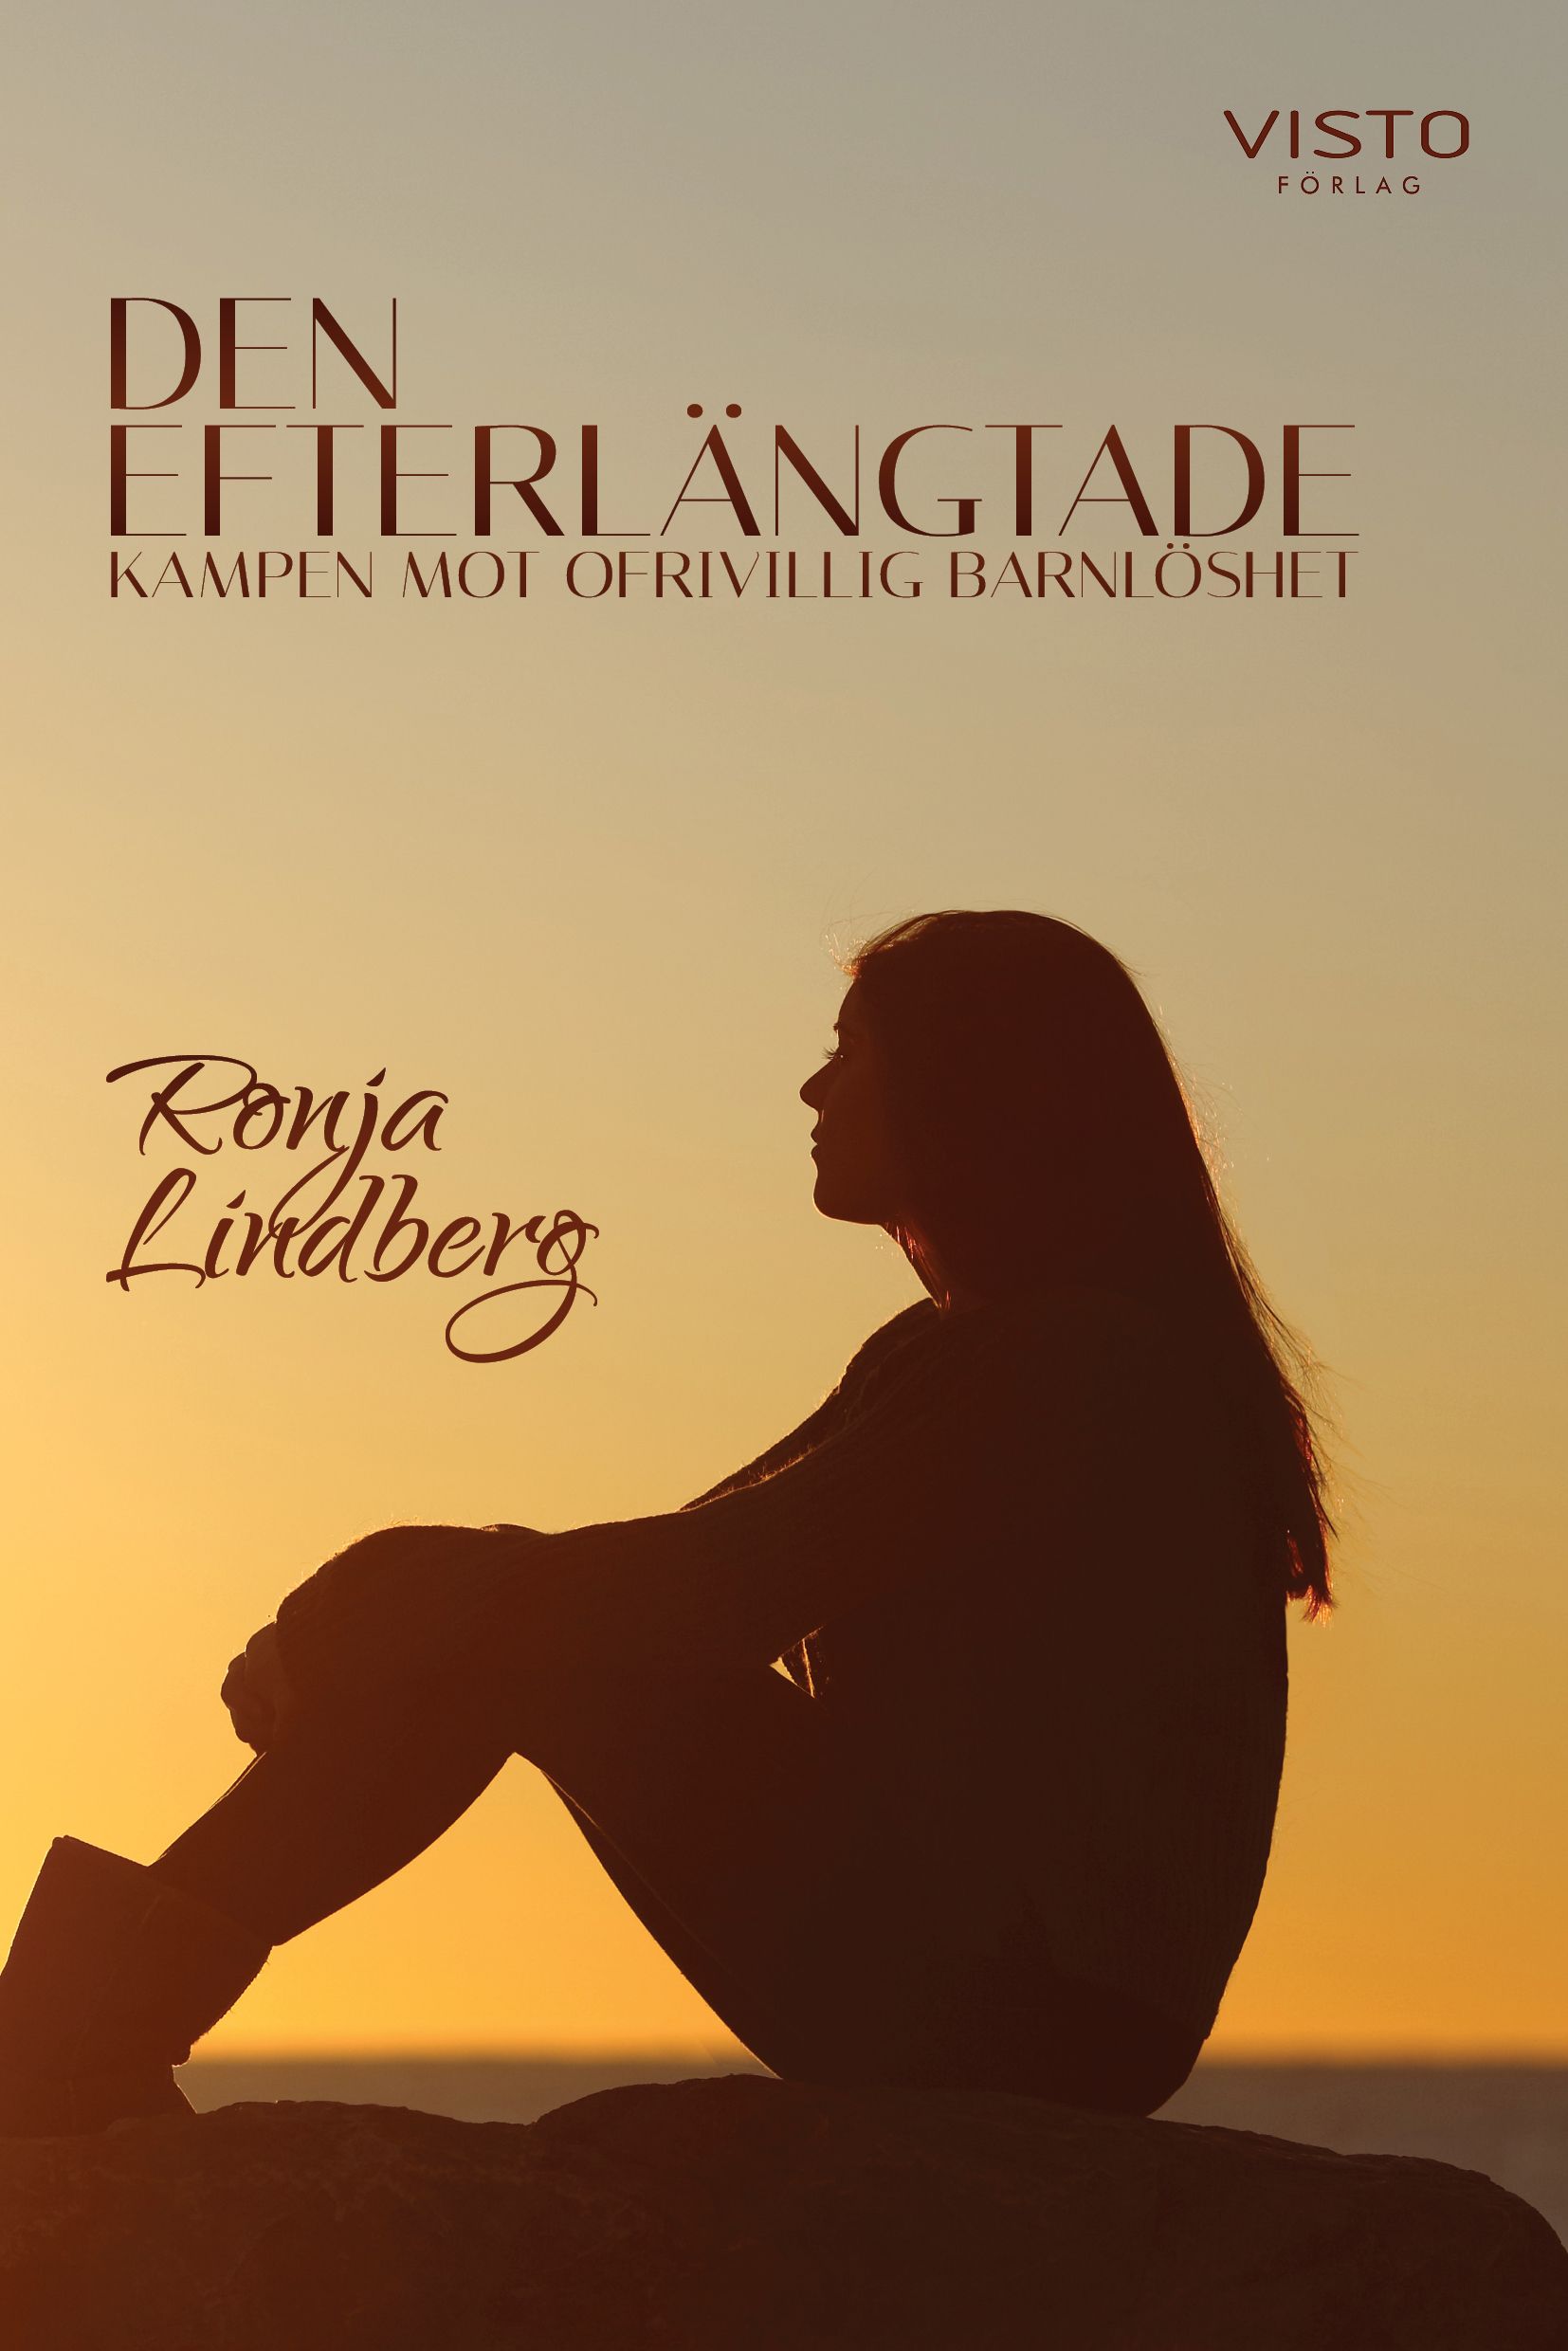 Den efterlängtade, kampen mot ofrivillig barnlöshet, e-bog af Ronja Lindberg